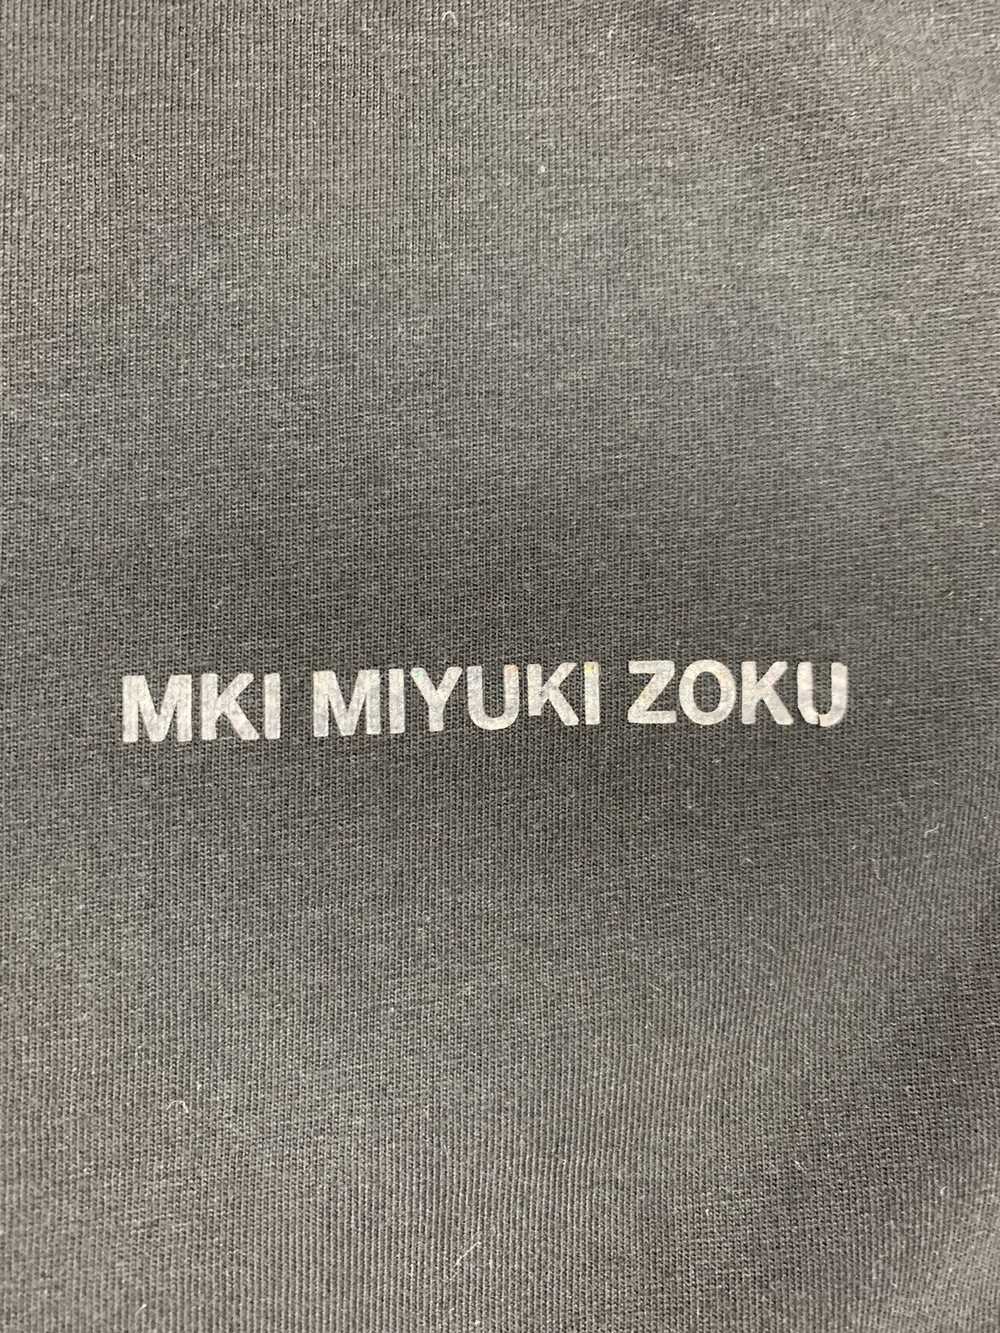 Mki Miyuki-Zoku Mki Miyuki Zoku T Shirt Japanese … - image 2